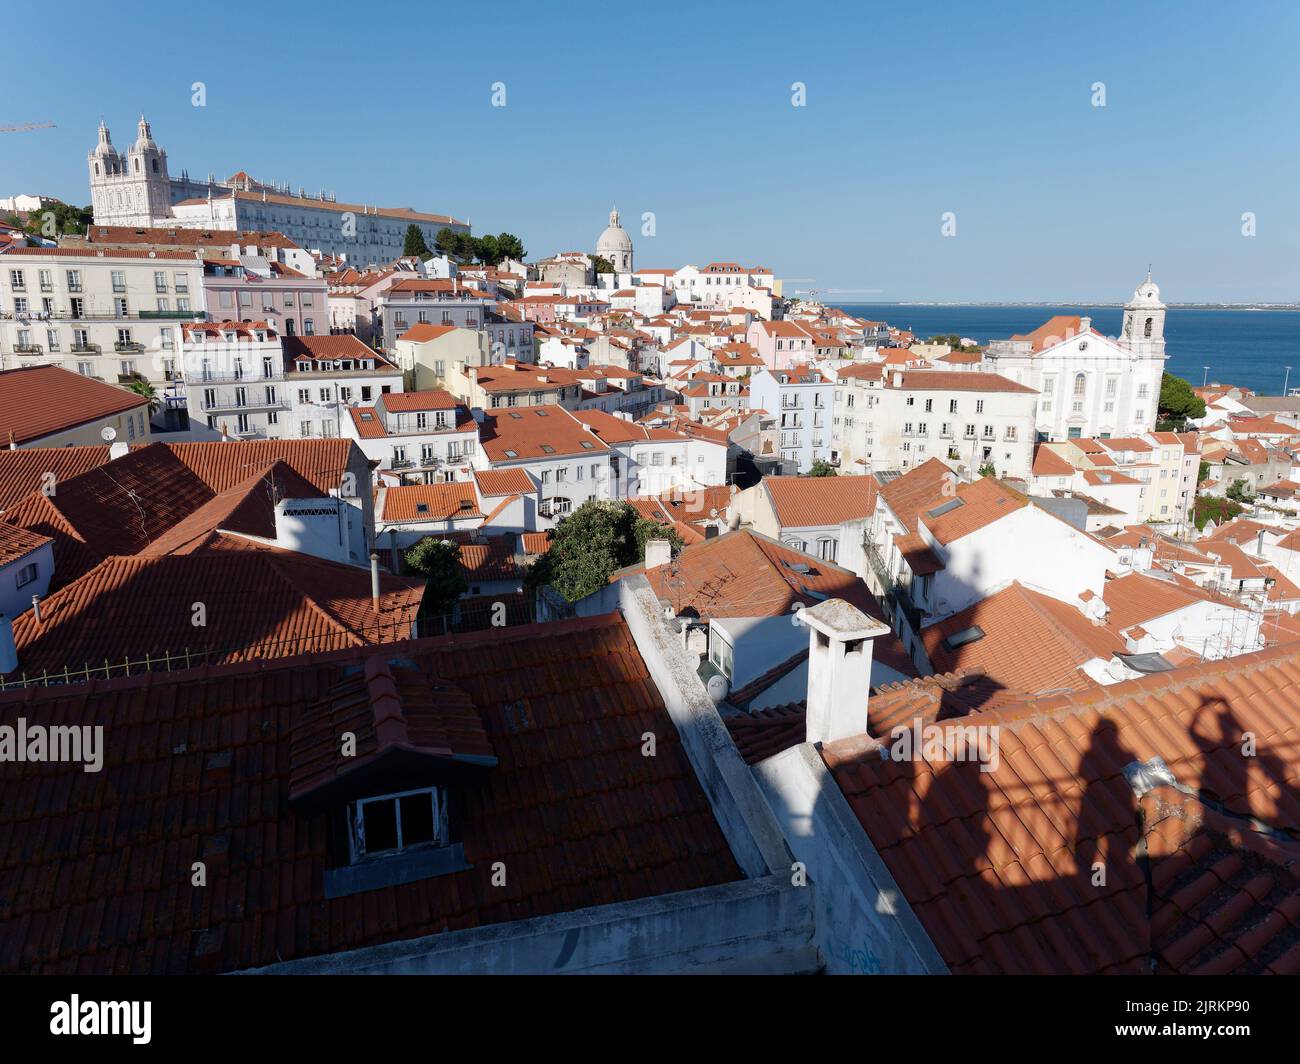 Blick vom Aussichtspunkt Miradouro das Portas do Sol in Lissabon, Portugal. Fluss Tagus rechts. Kloster São Vicente de Fora oben links. Stockfoto